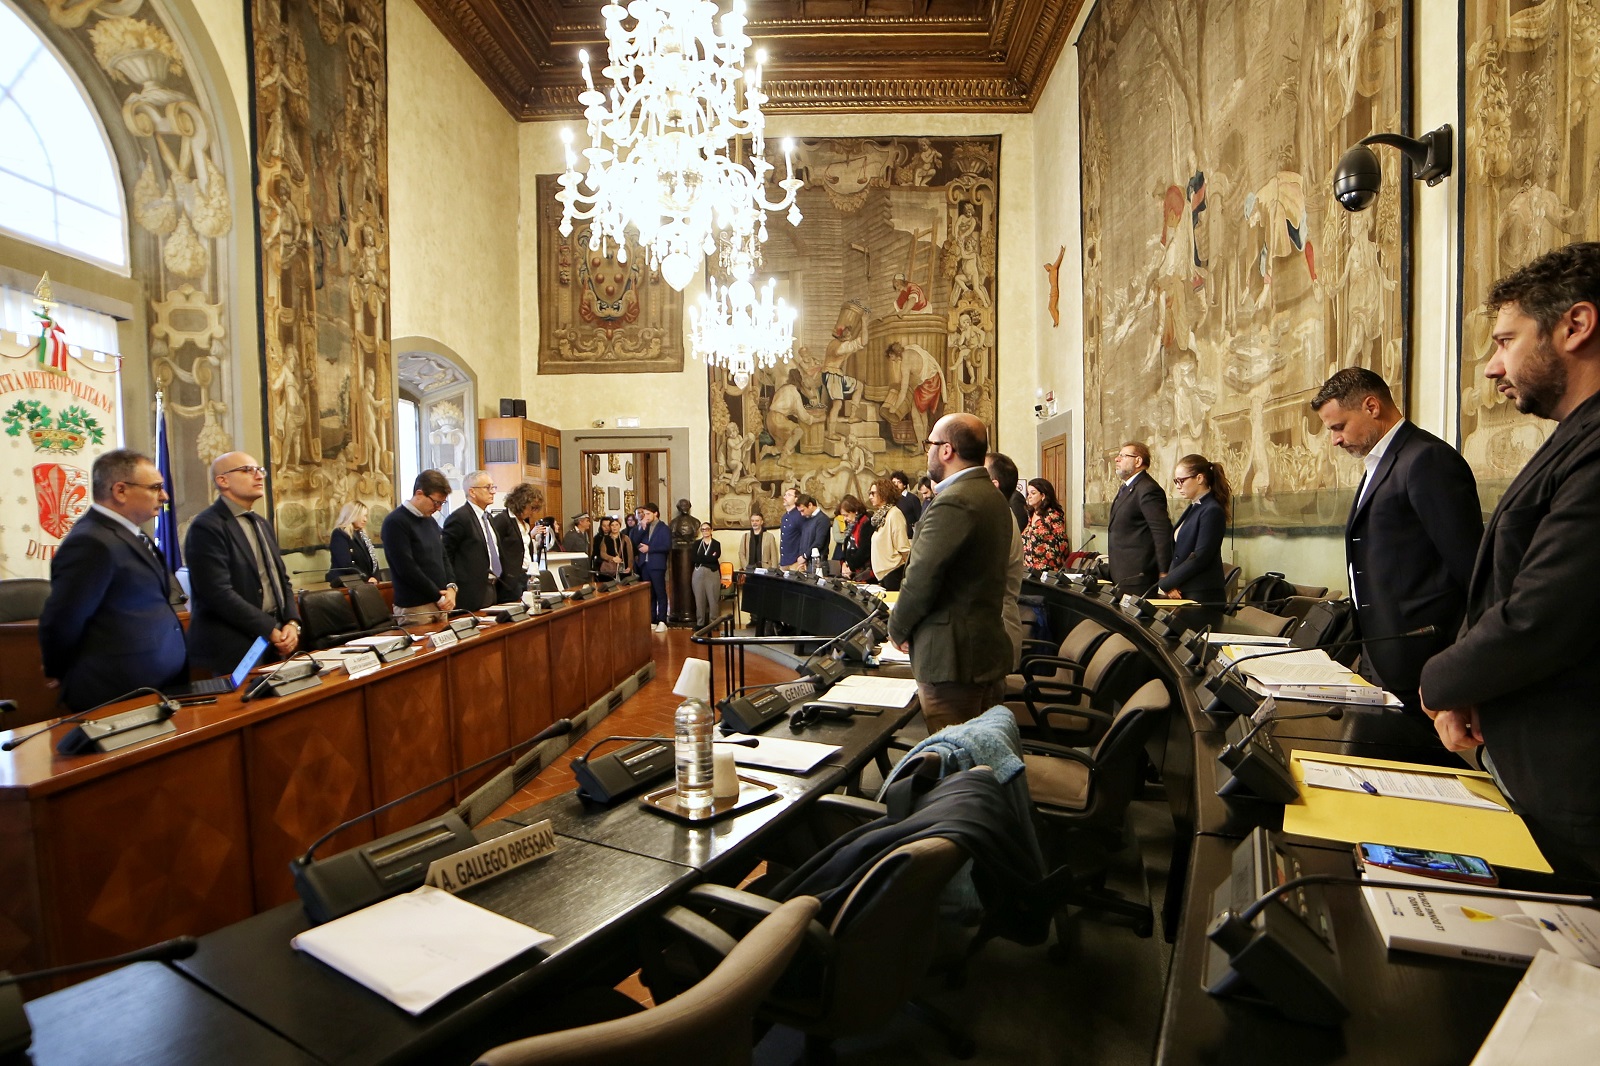 Consiglio della Citt Metropolitana di Firenze ha osservato un minuto di silenzio in ricordo delle vittime del maltempo